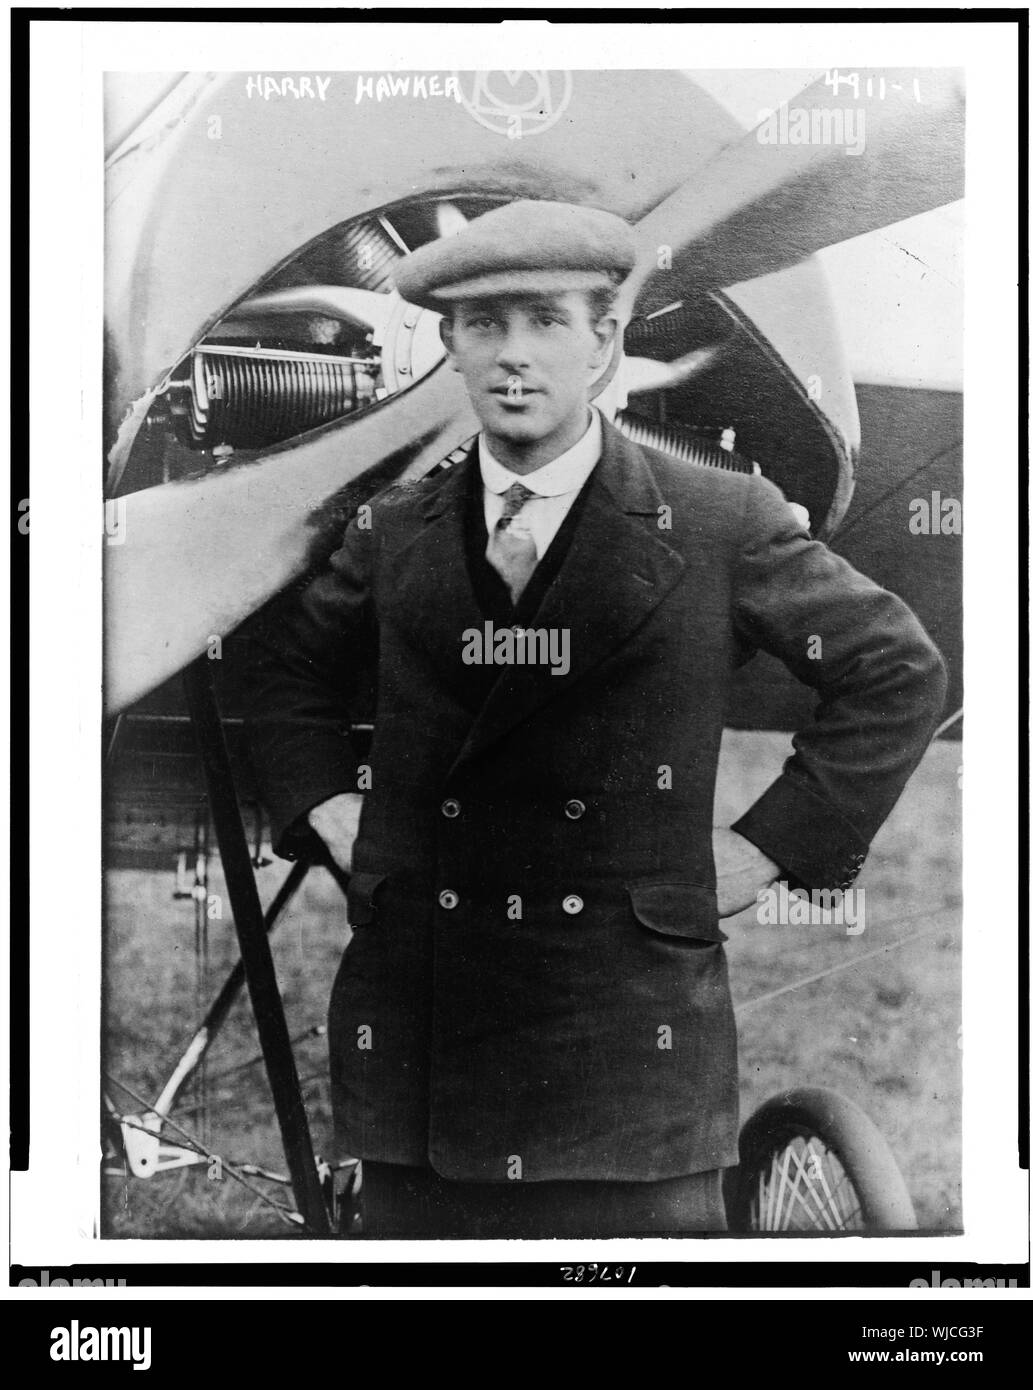 Harry Hawker to try transatlantic flight from St. John / Photo. by Bain News Service, New York City. Stock Photo